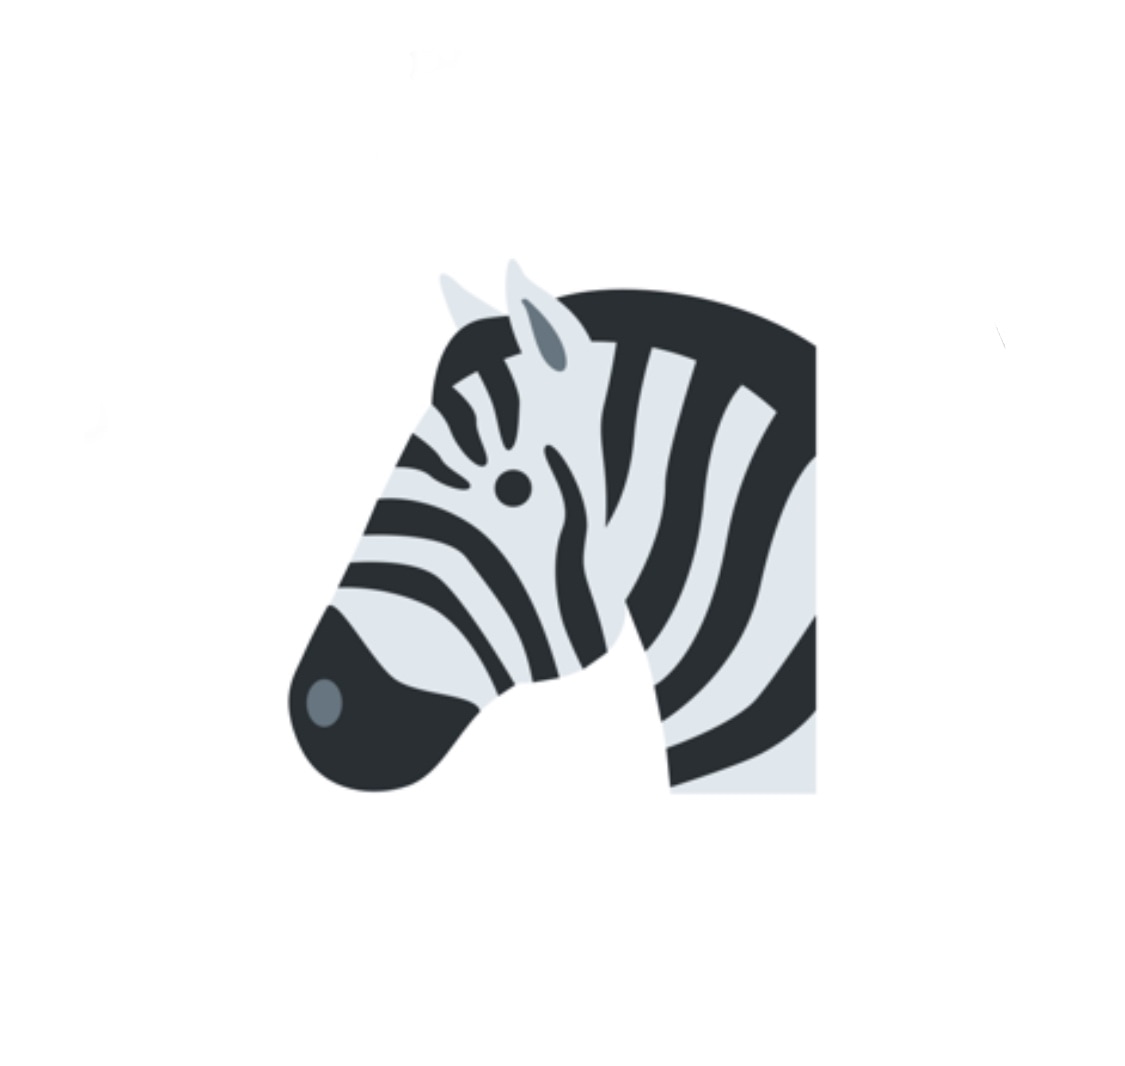 Zebra v1.0.7 memperbaiki kerusakan saat menyortir repositori berdasarkan abjad 2